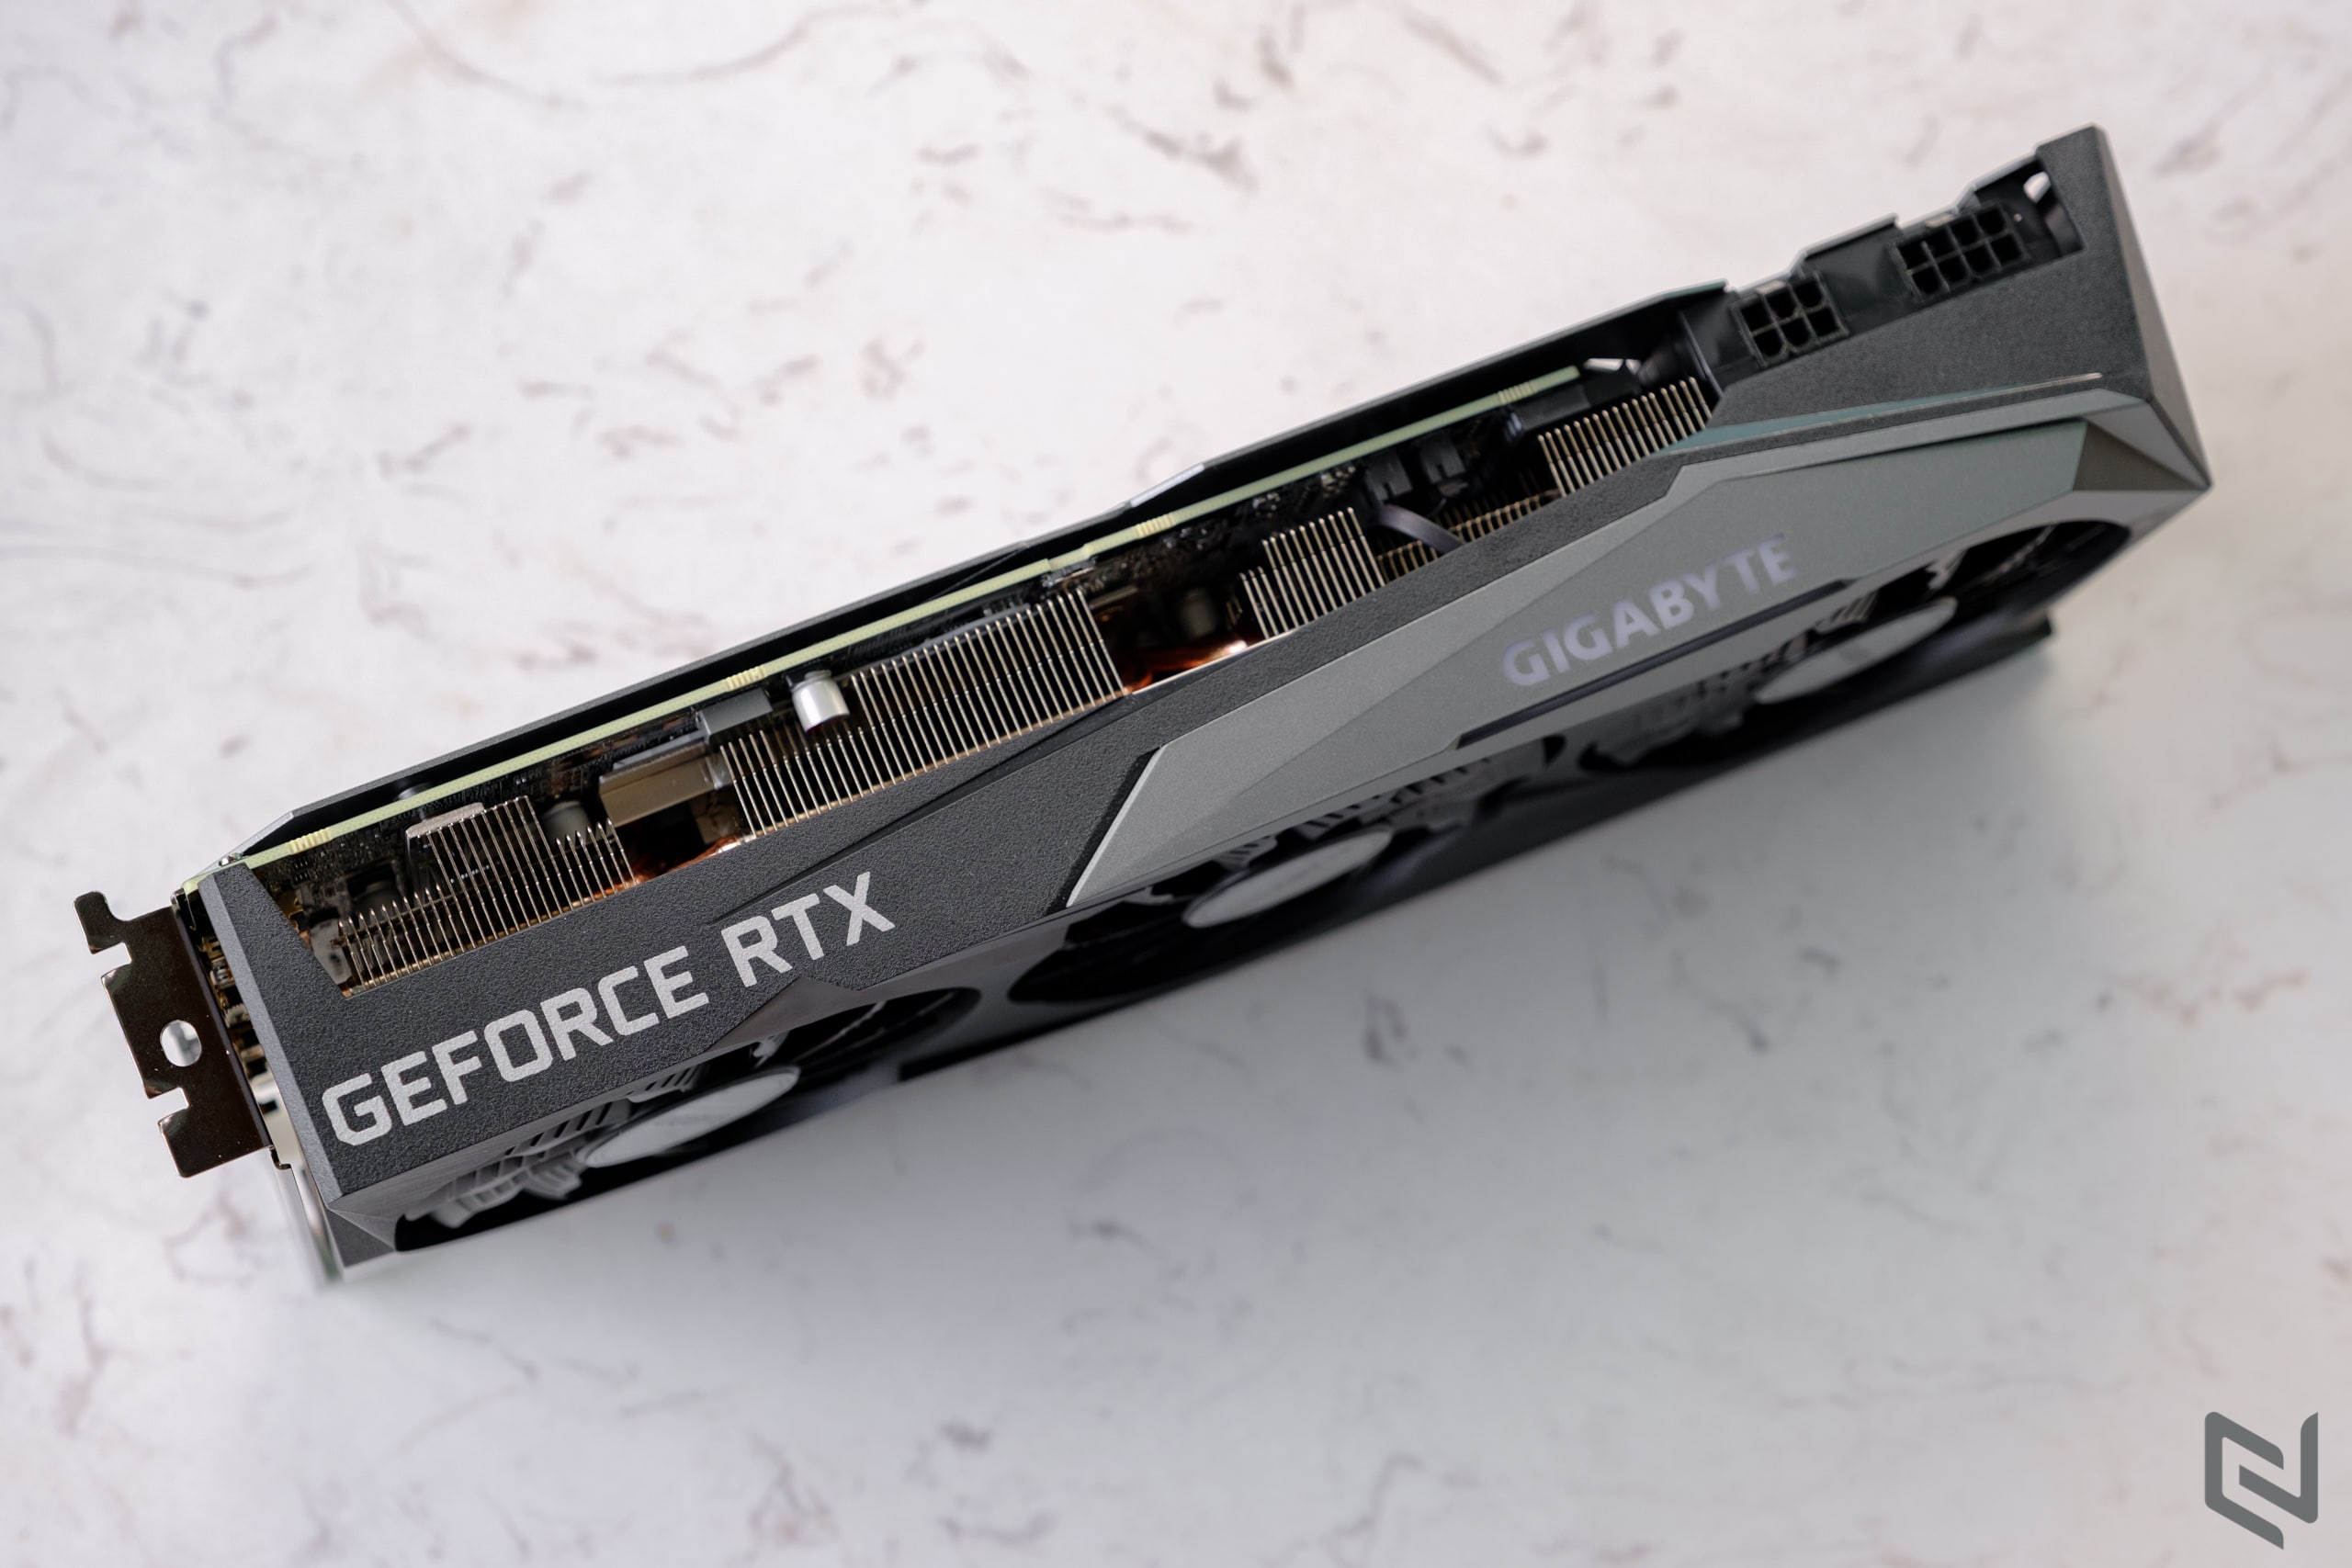 Mở hộp card đồ hoạ Gigabyte GeForce RTX 3060 Ti GAMING OC PRO 8G: Sự lựa chọn hợp lý cho chơi game 1080p và 1440p